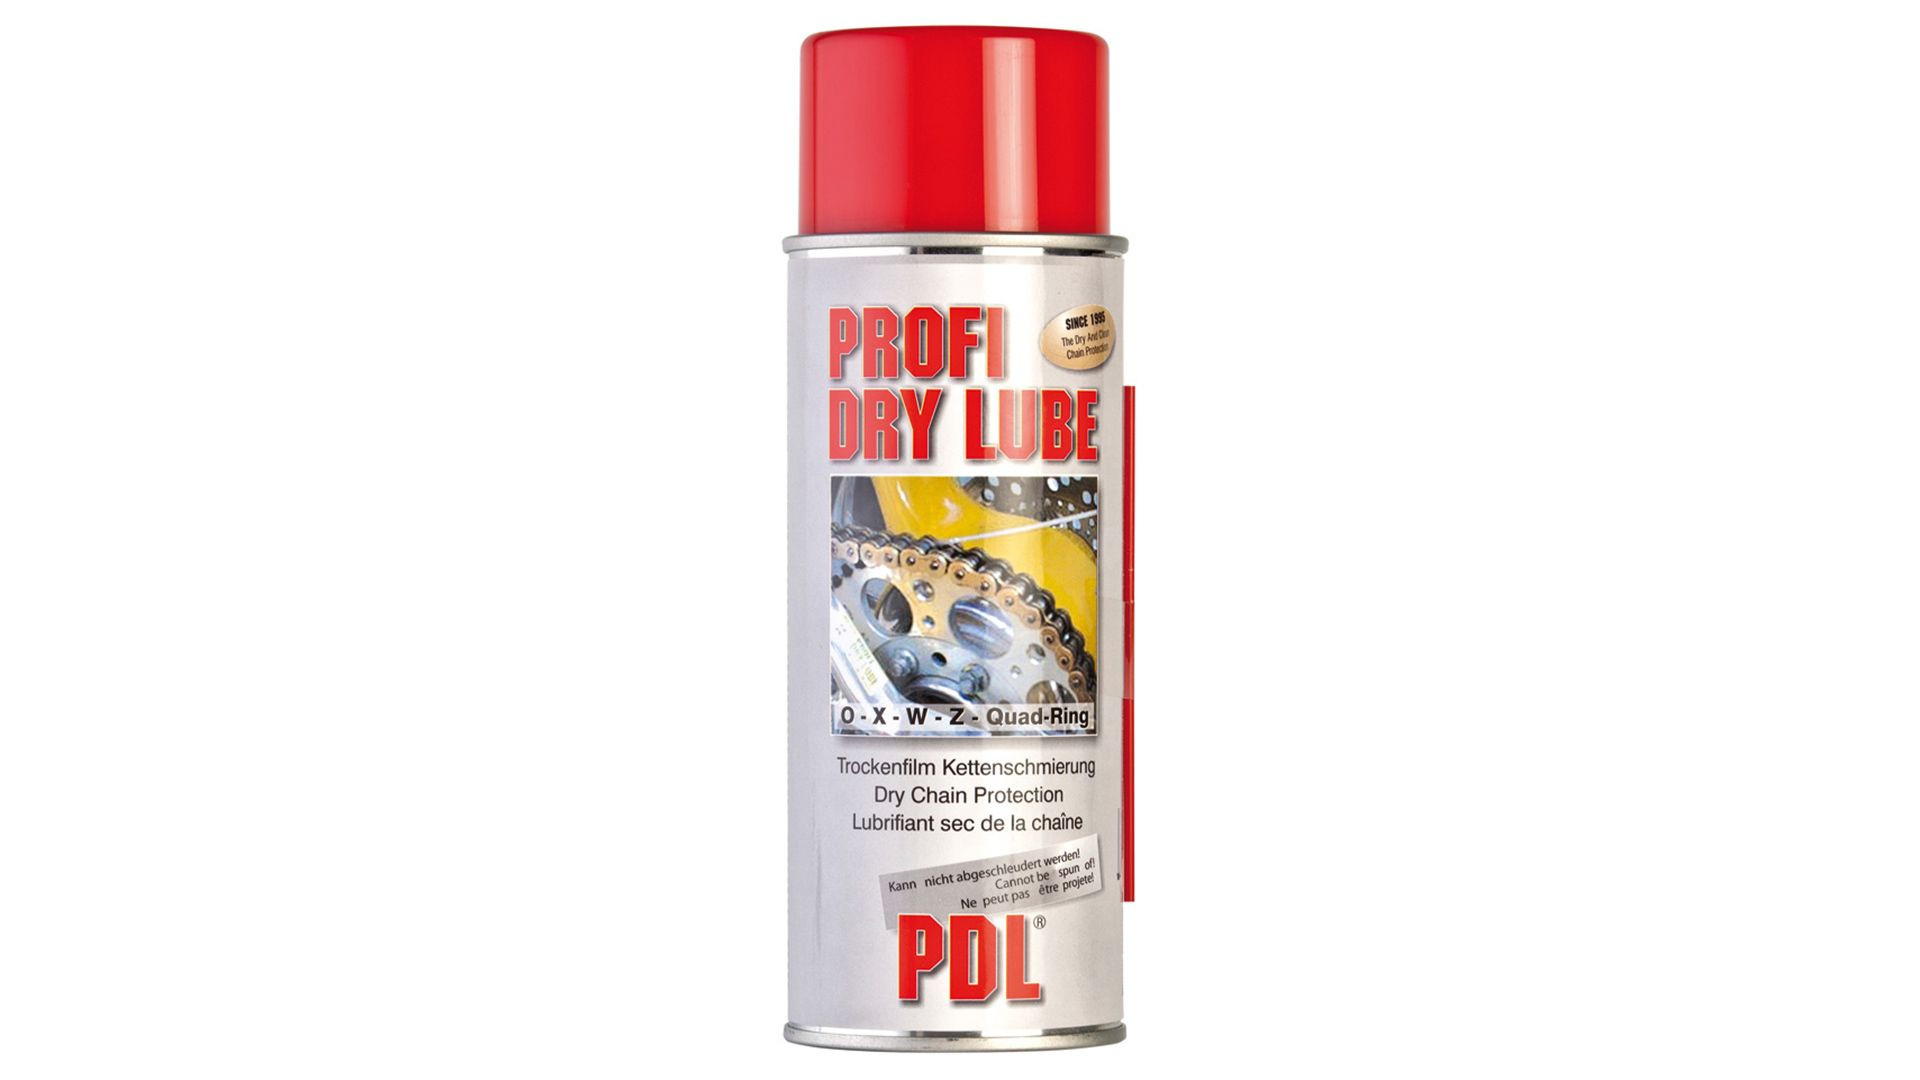 PROFI DRY LUBE Profi Dry Lube, trockene Kettenschmierung, 400ml (Stück)